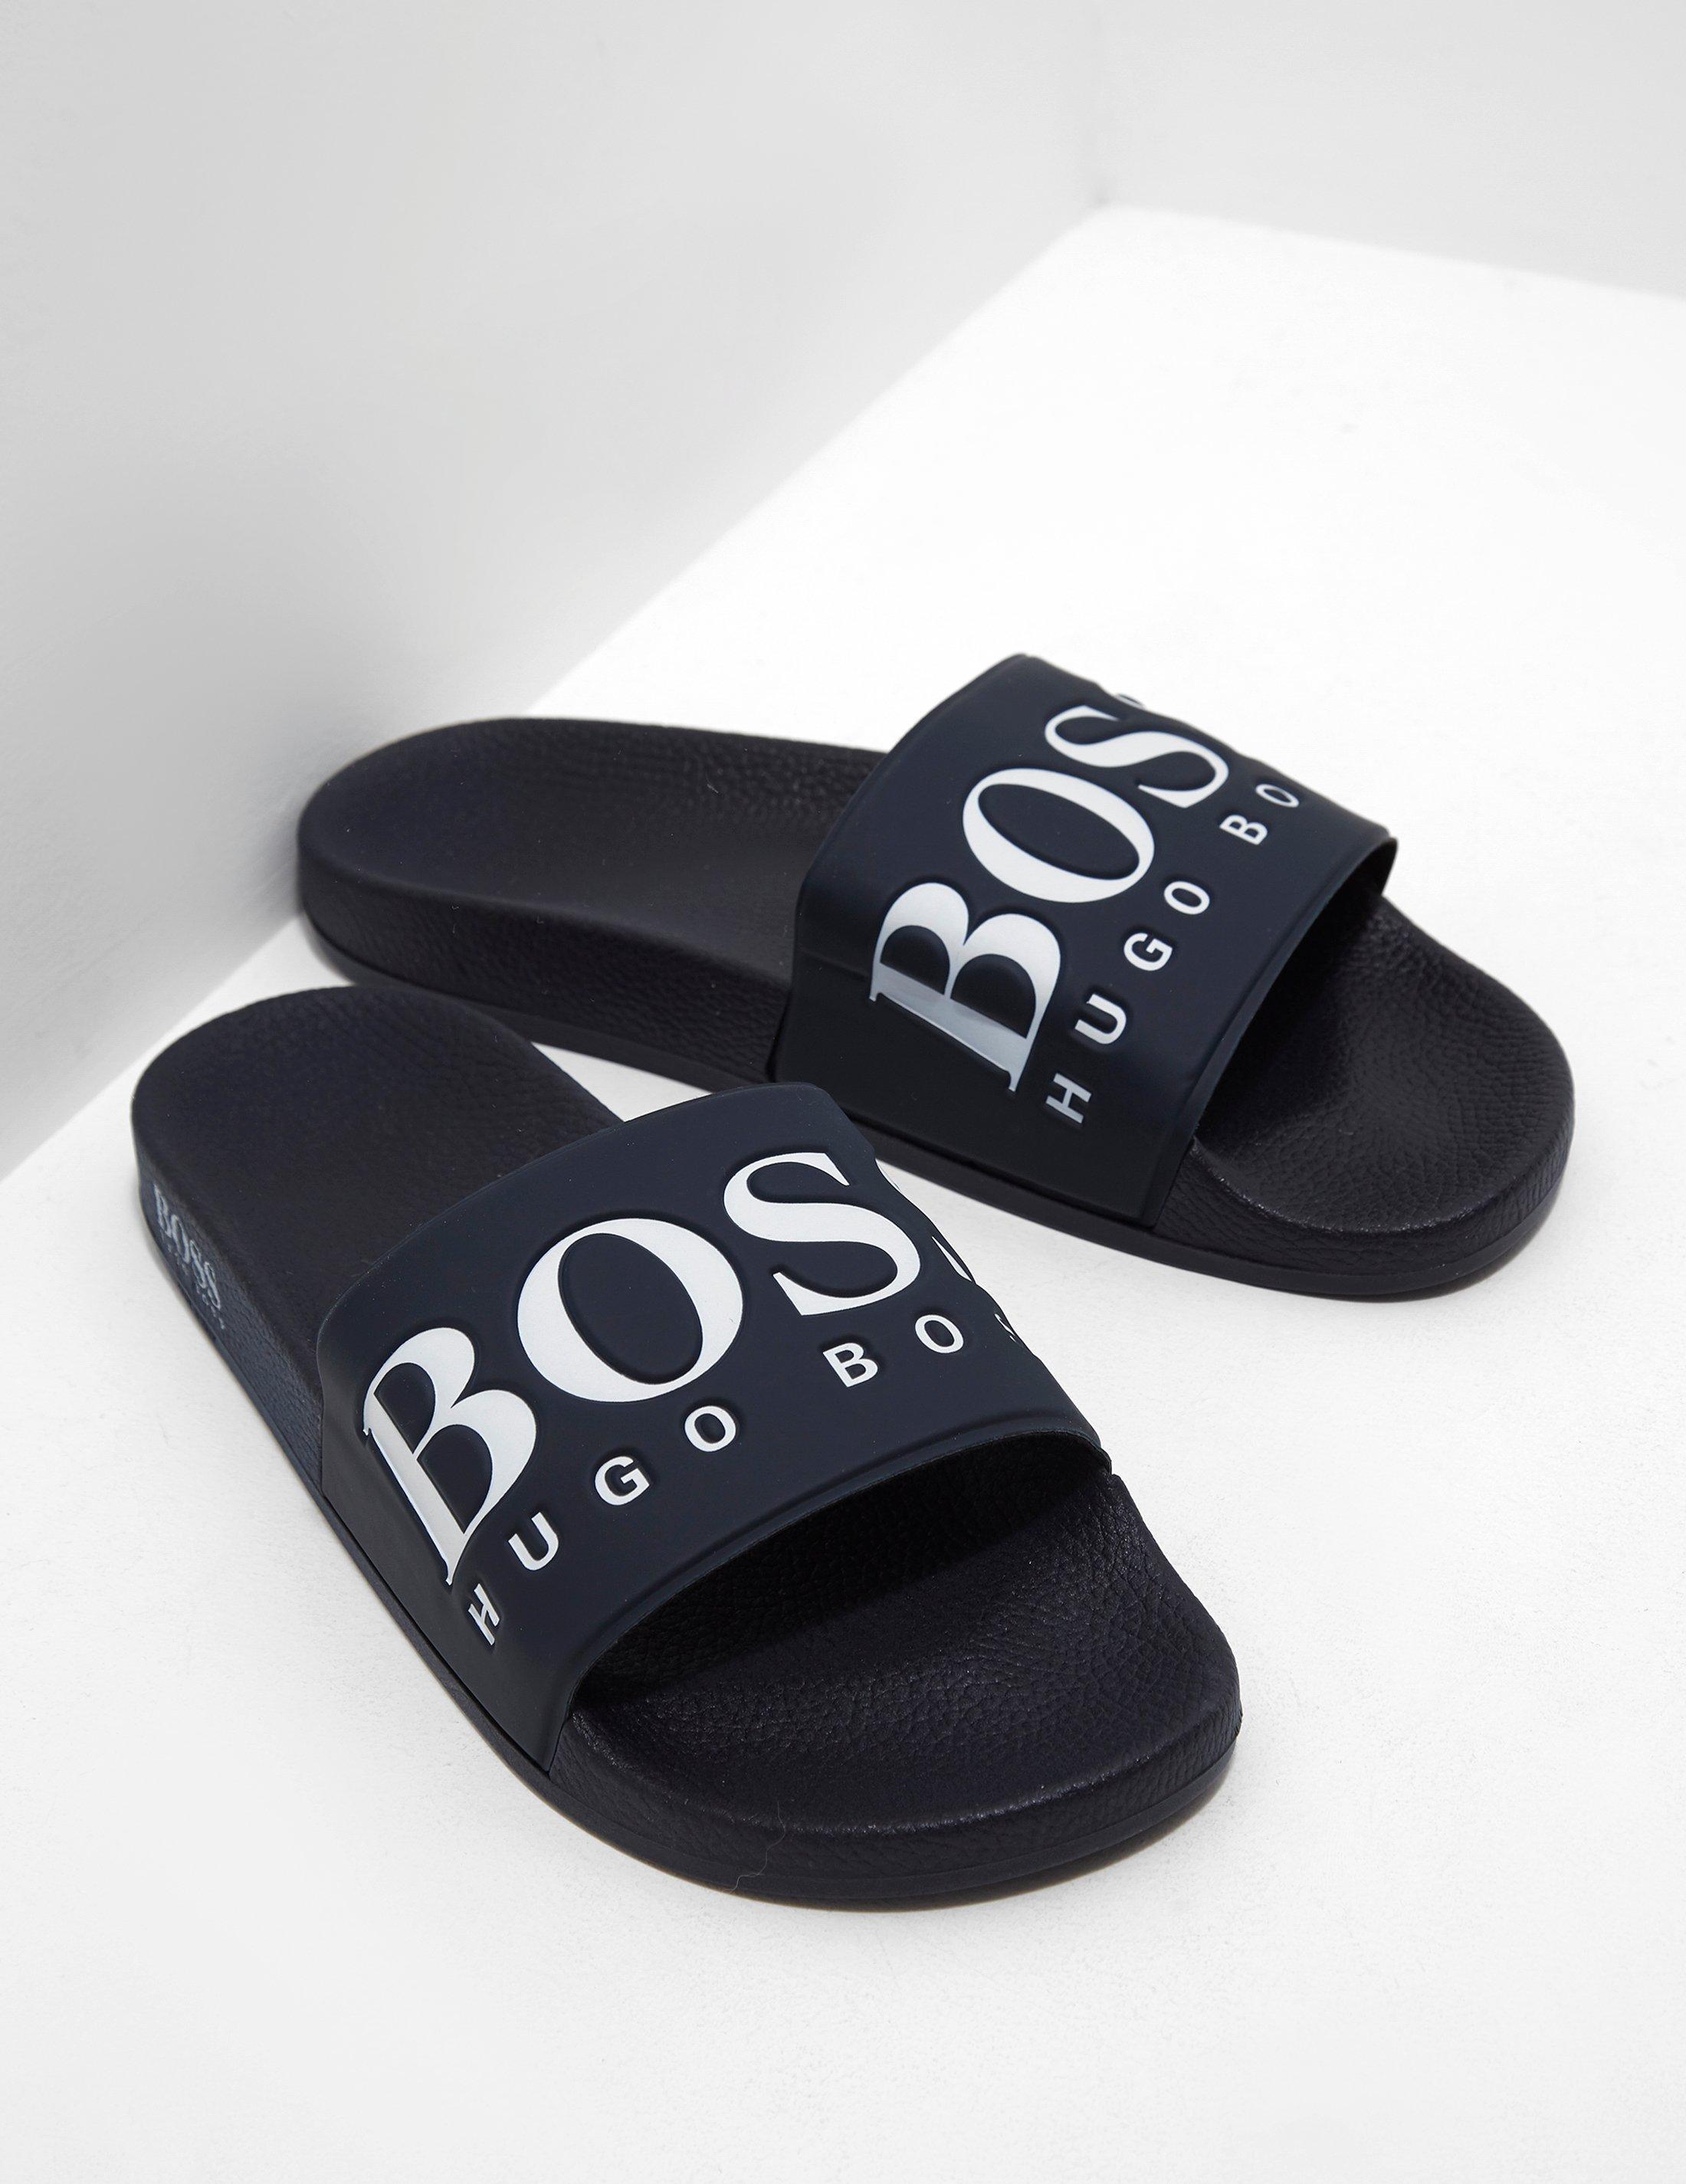 HUGO BOSS  slides sliders slipper Genuine £155 SUMMER wear Dark Blue 